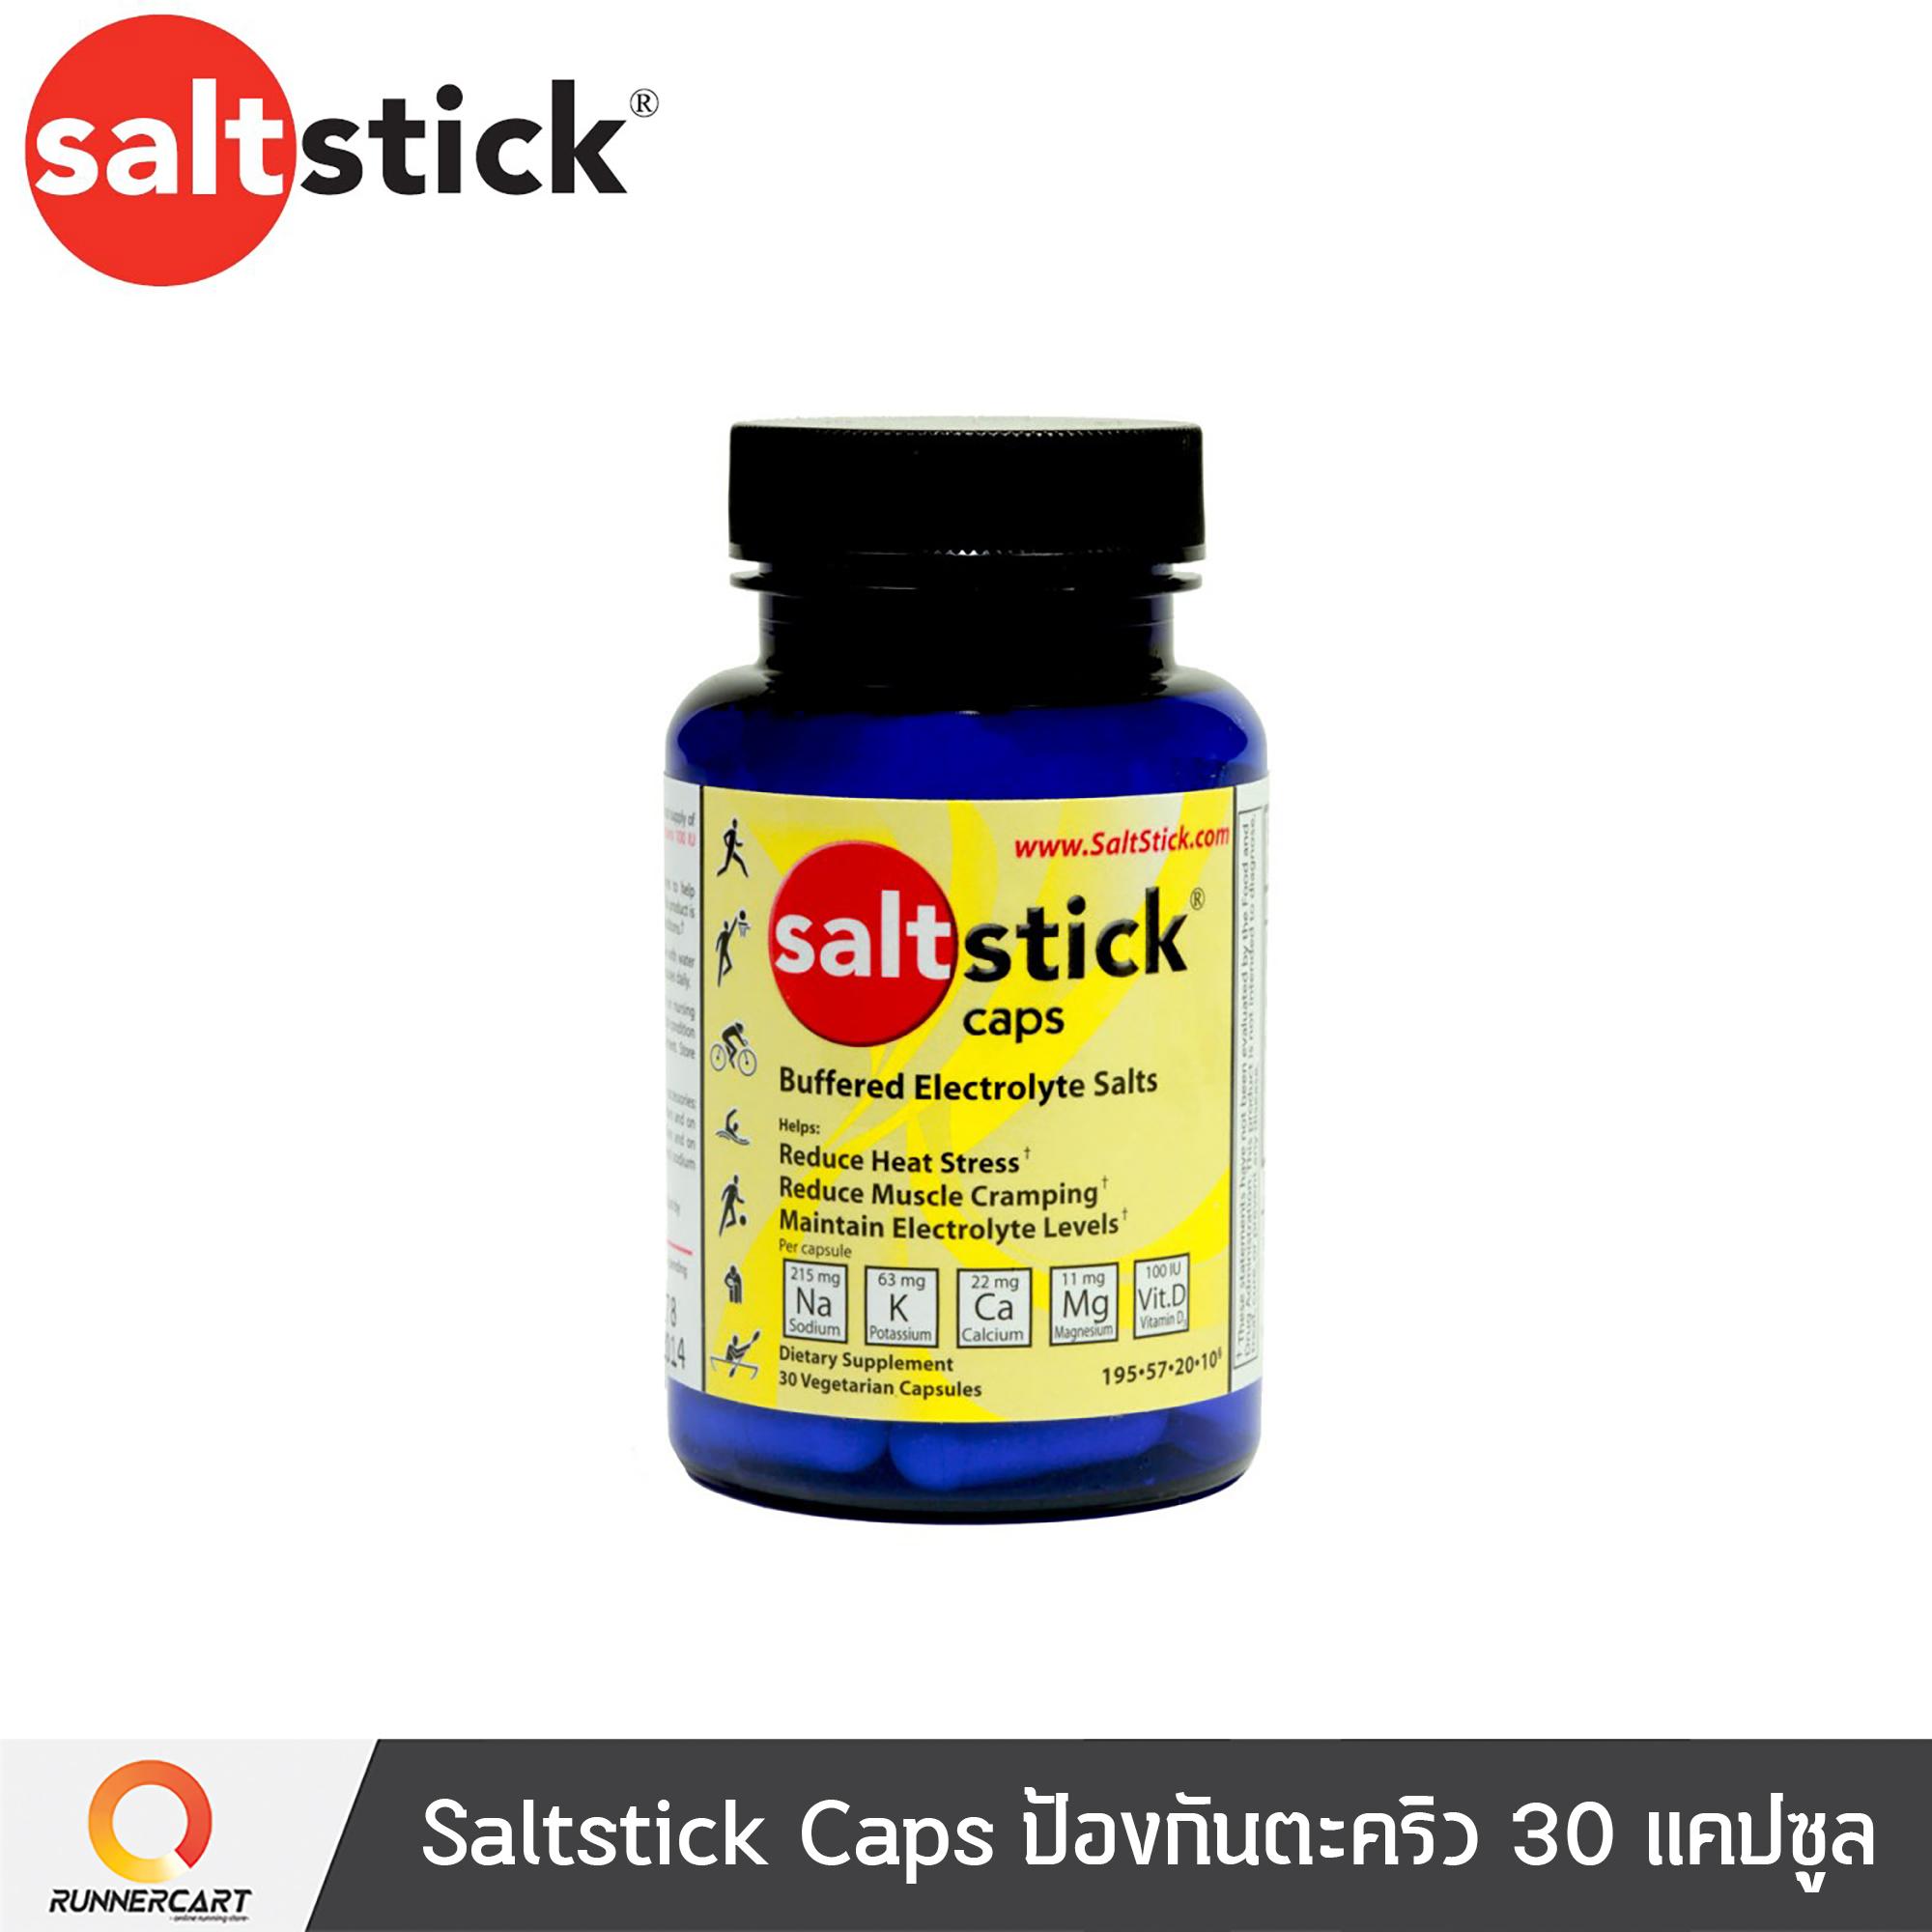 Saltstick Caps ป้องกันตะคริว สี ..., 30 แคปซูล สี ..., 30 แคปซูล